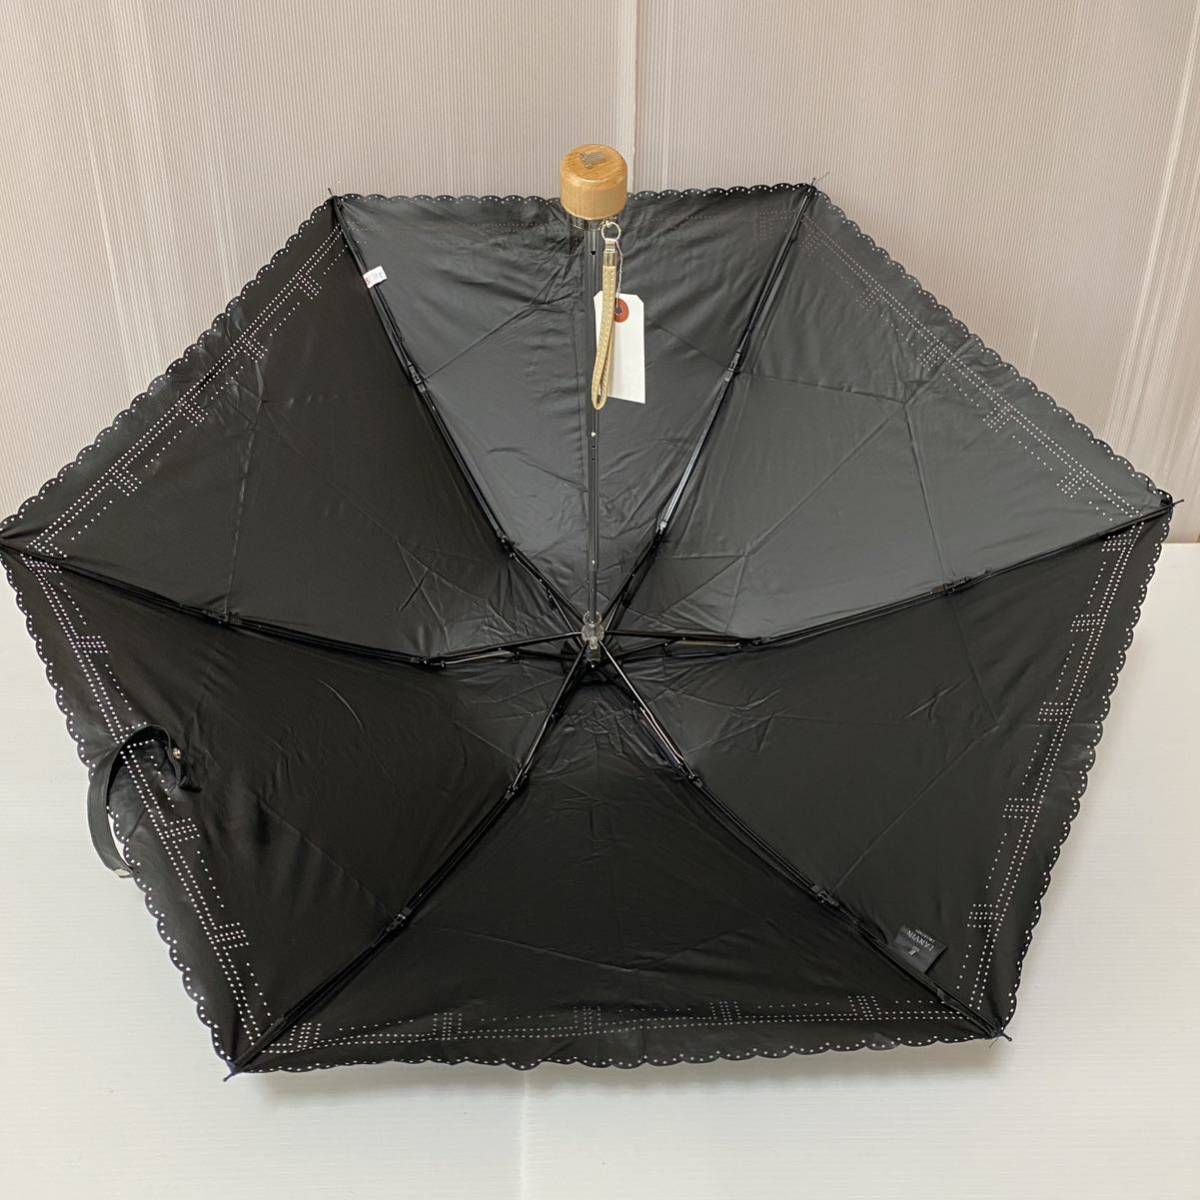 u230524 LANVIN Lanvin folding umbrella . rain combined use umbrella parasol 